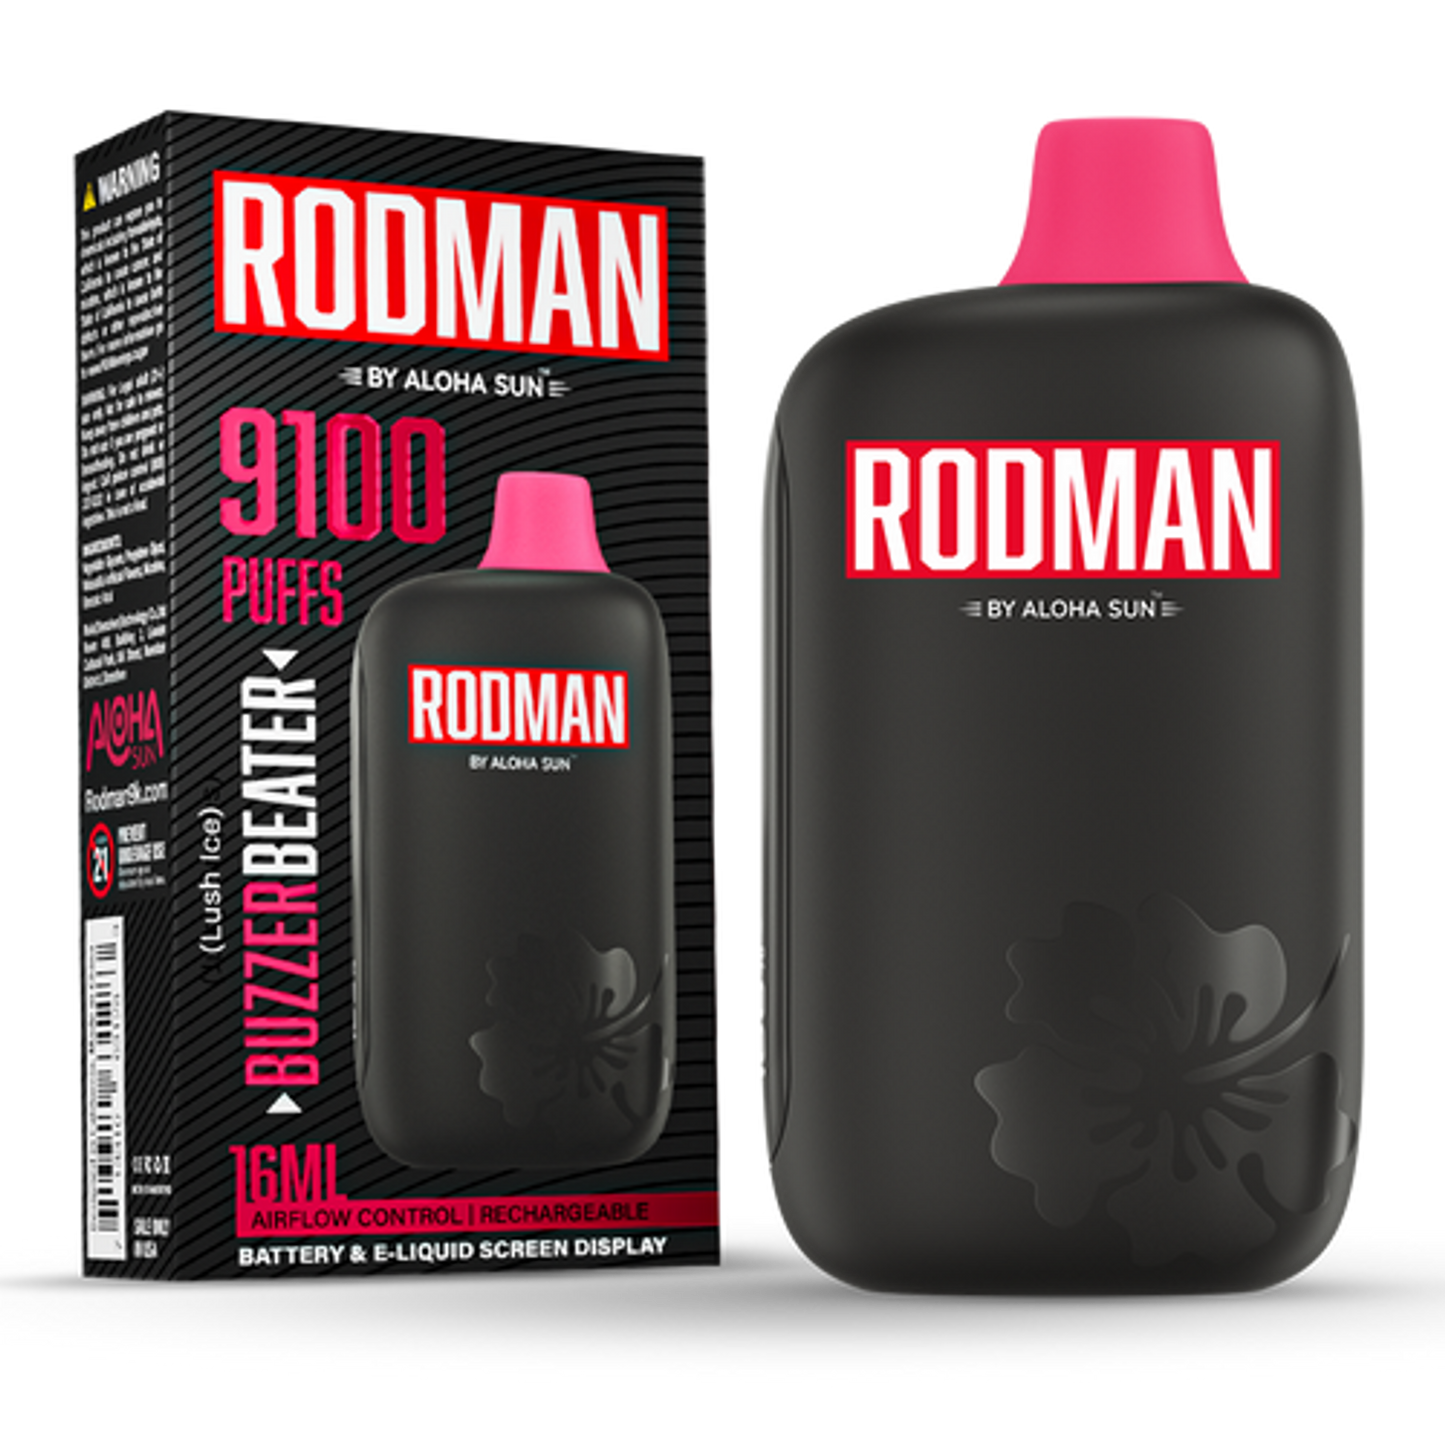 Rodman 9100 Buzzer Beater